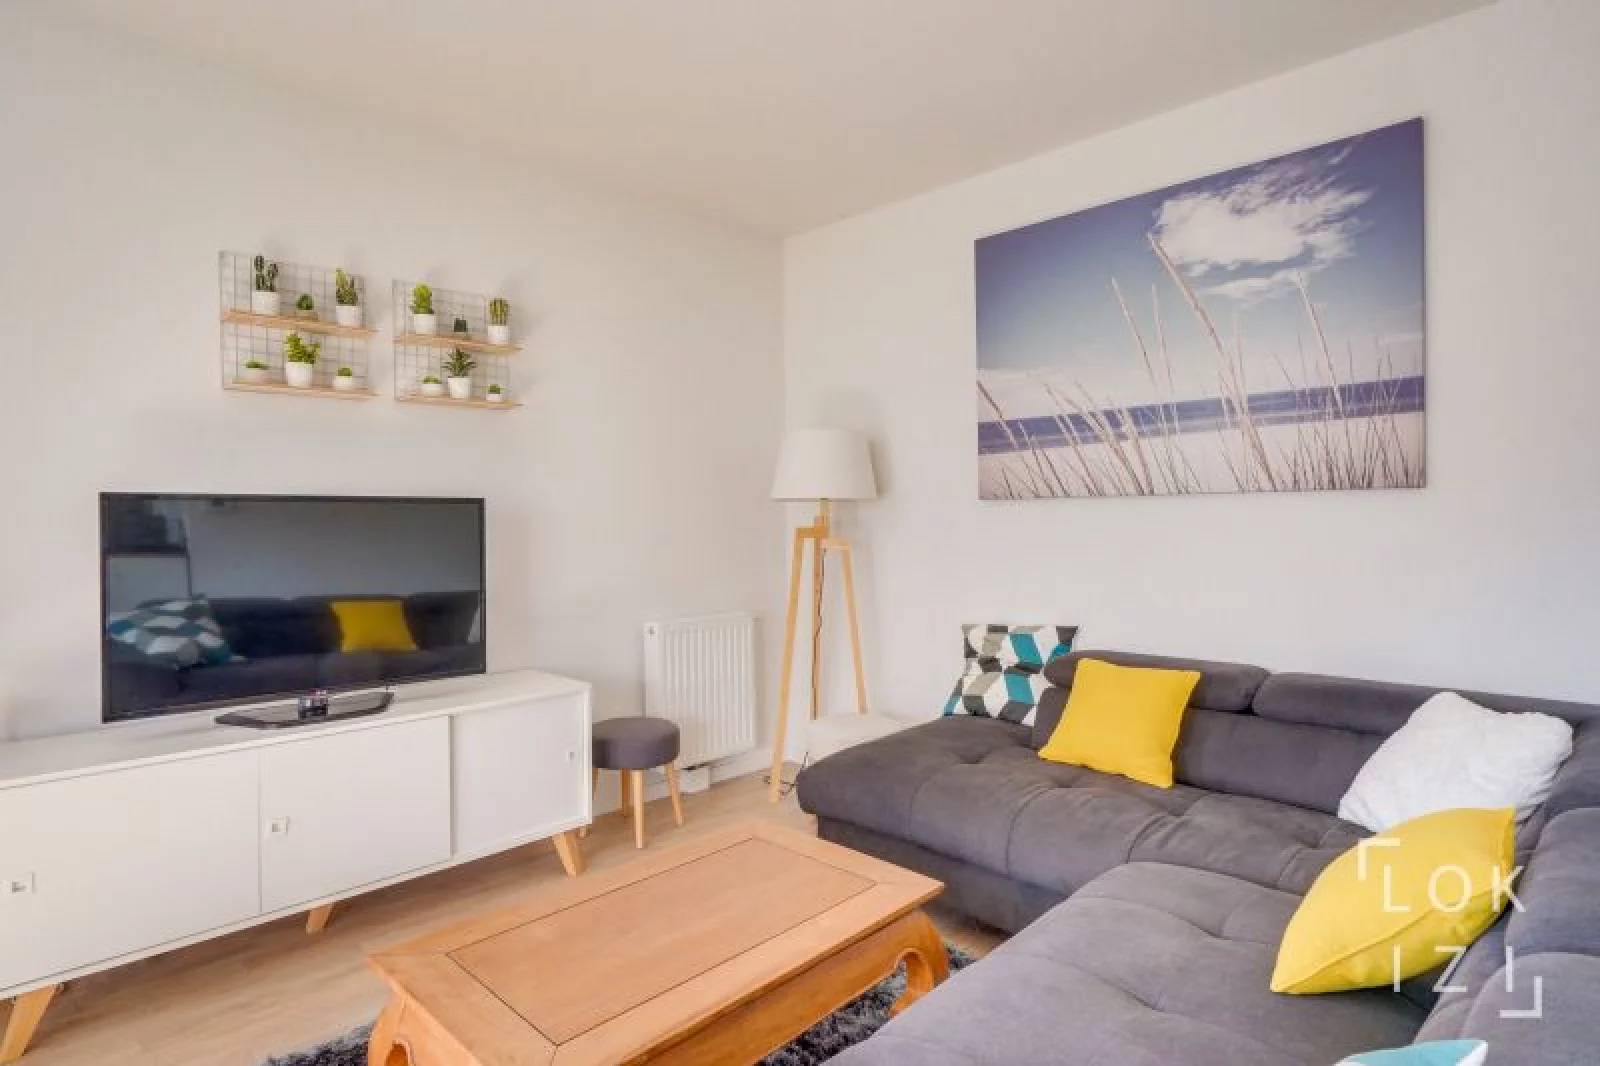 Location appartement meublé 3 pièces 73m² (Bordeaux nord - Lormont)